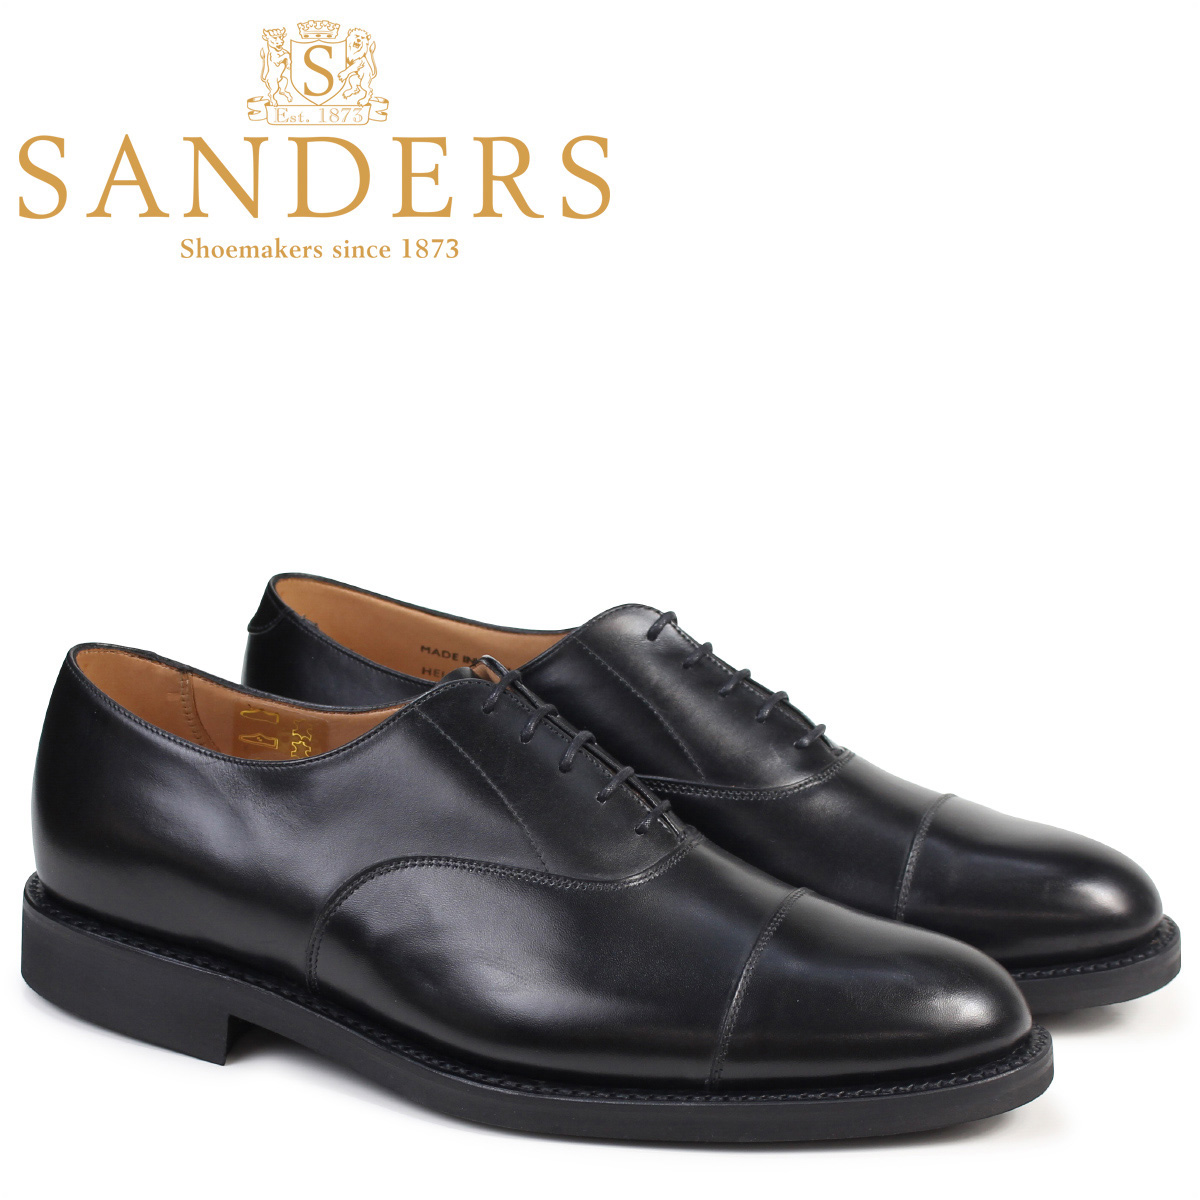 Sanders shoes SANDERS military Oxford 